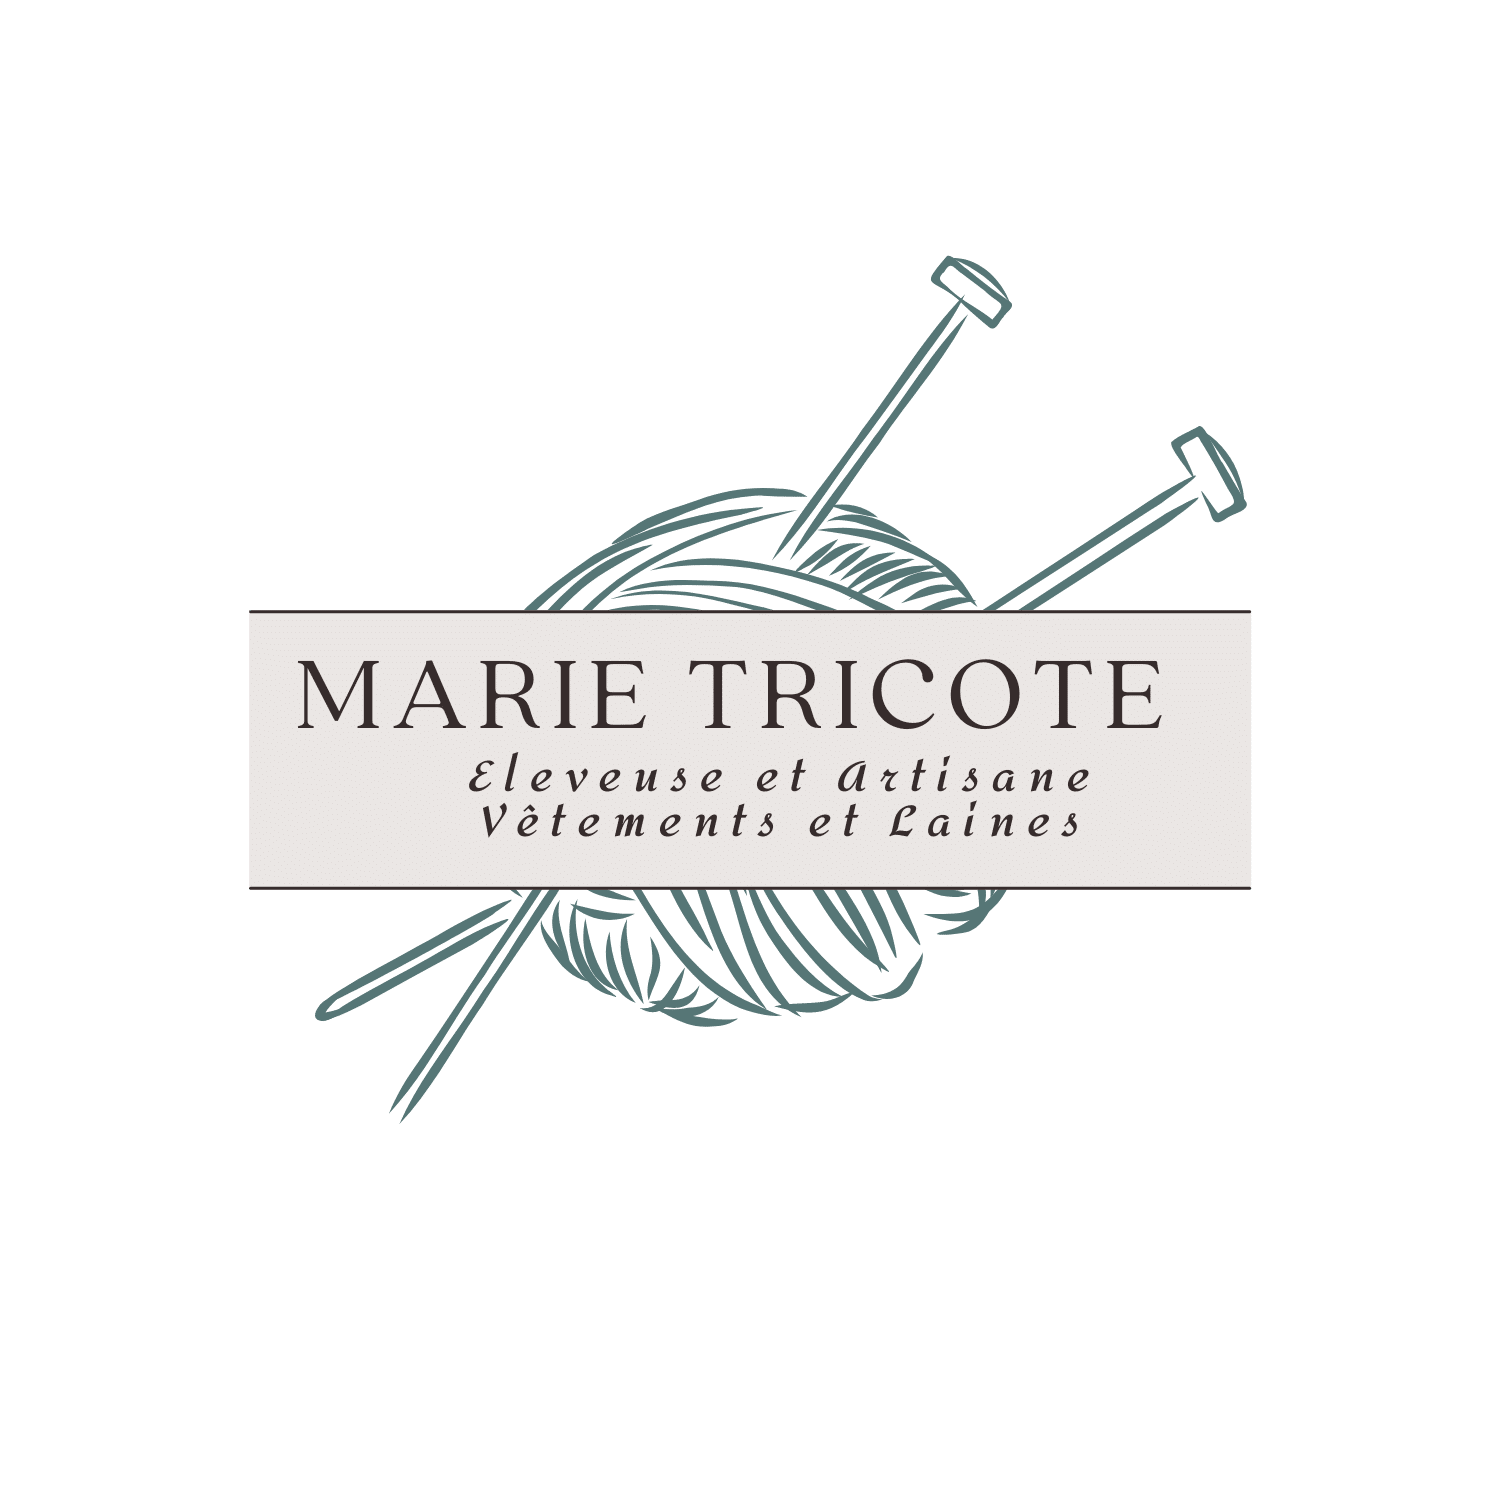 Marie Tricote